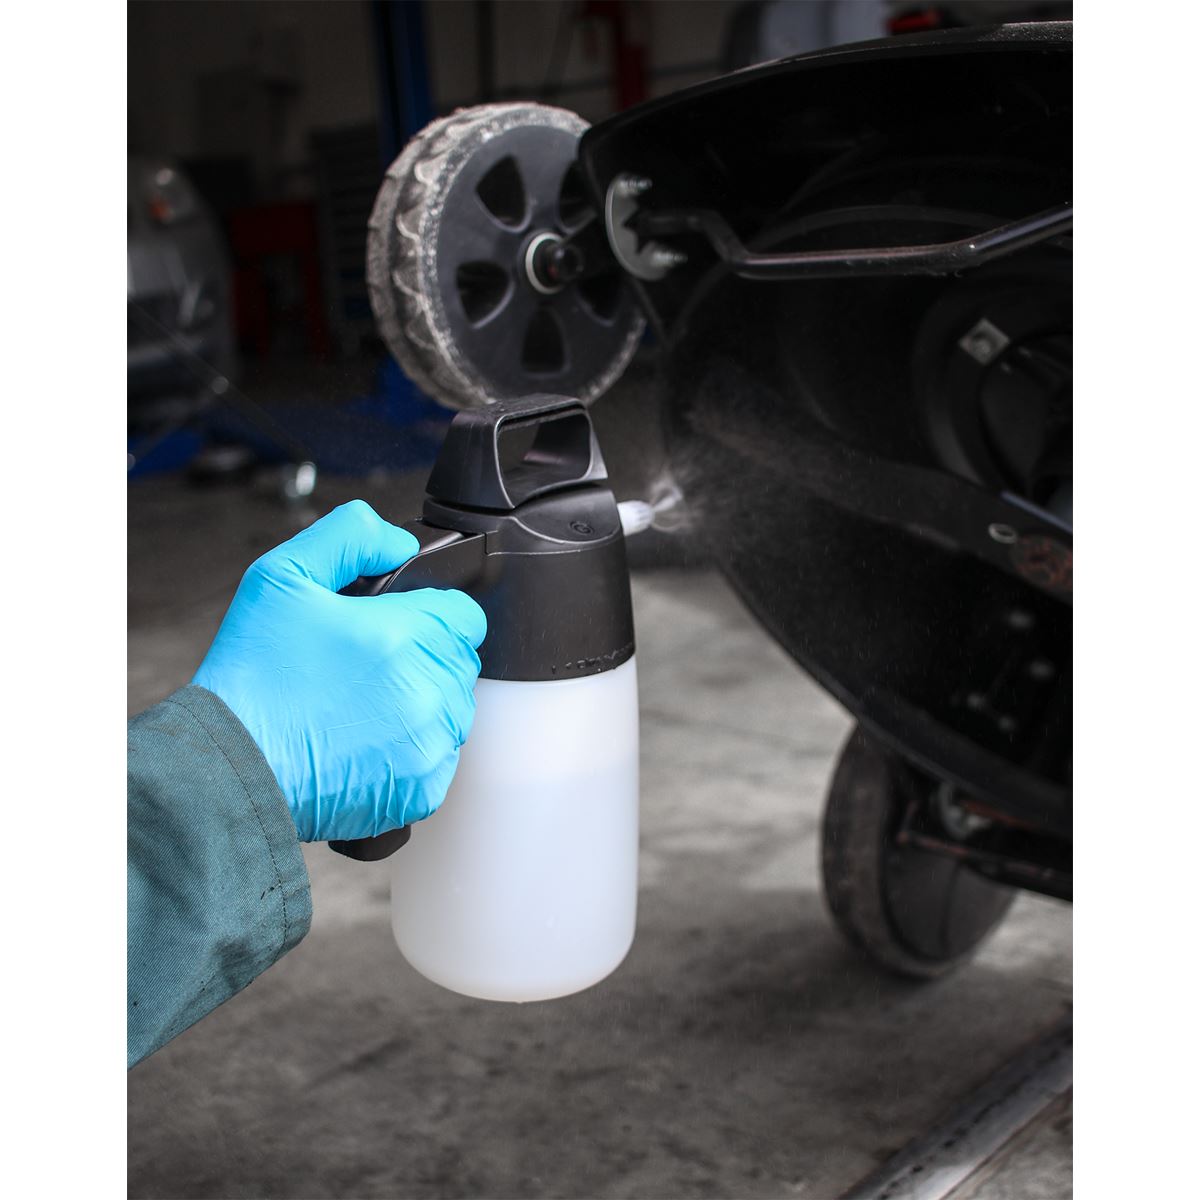 Sealey Premier Premier Industrial Detergent Pressure Sprayer